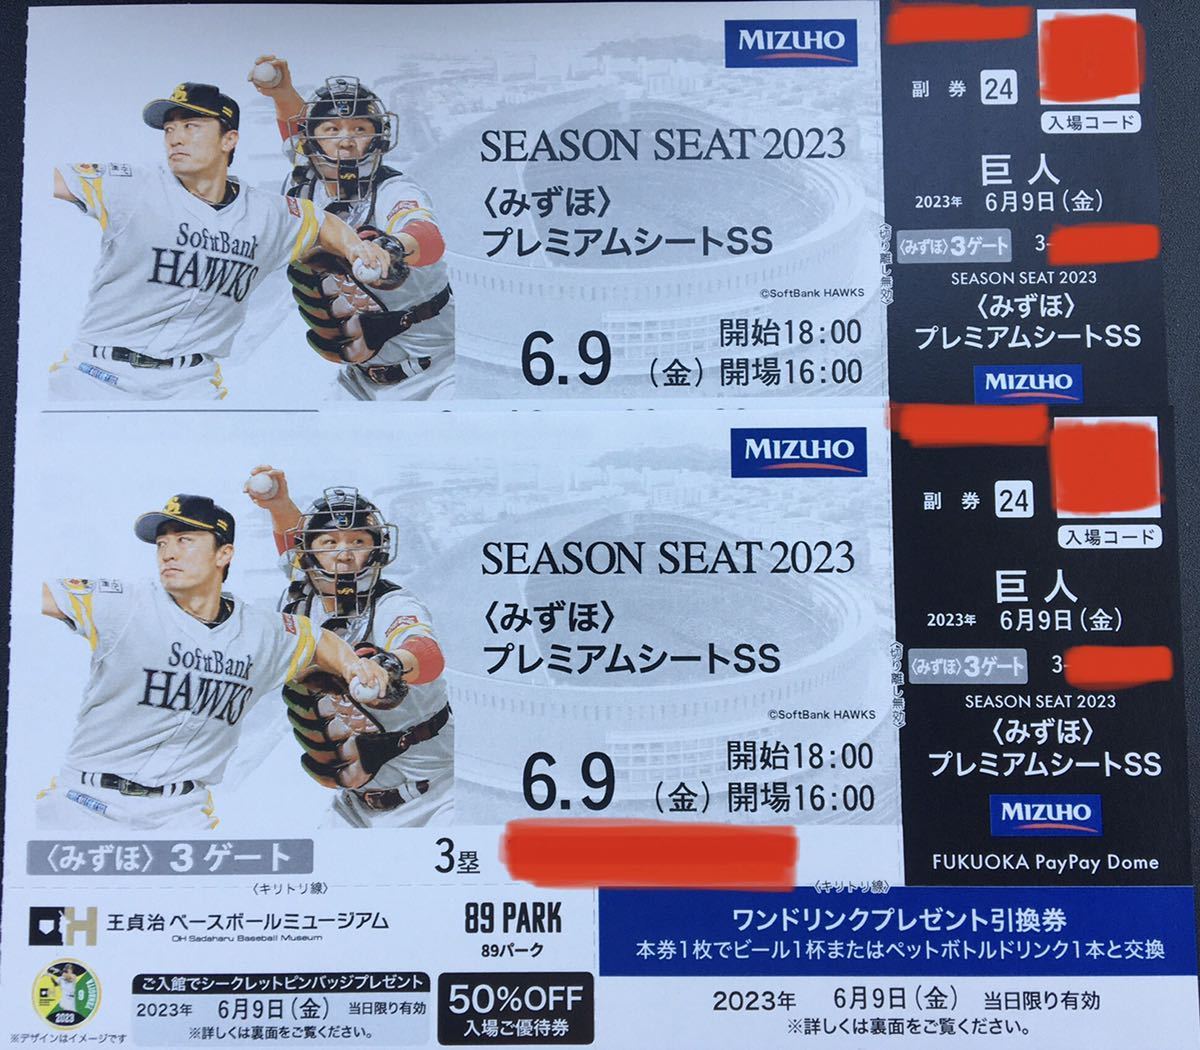 6月9日(金)福岡ソフトバンクホークス対巨人 みずほプレミアムシート